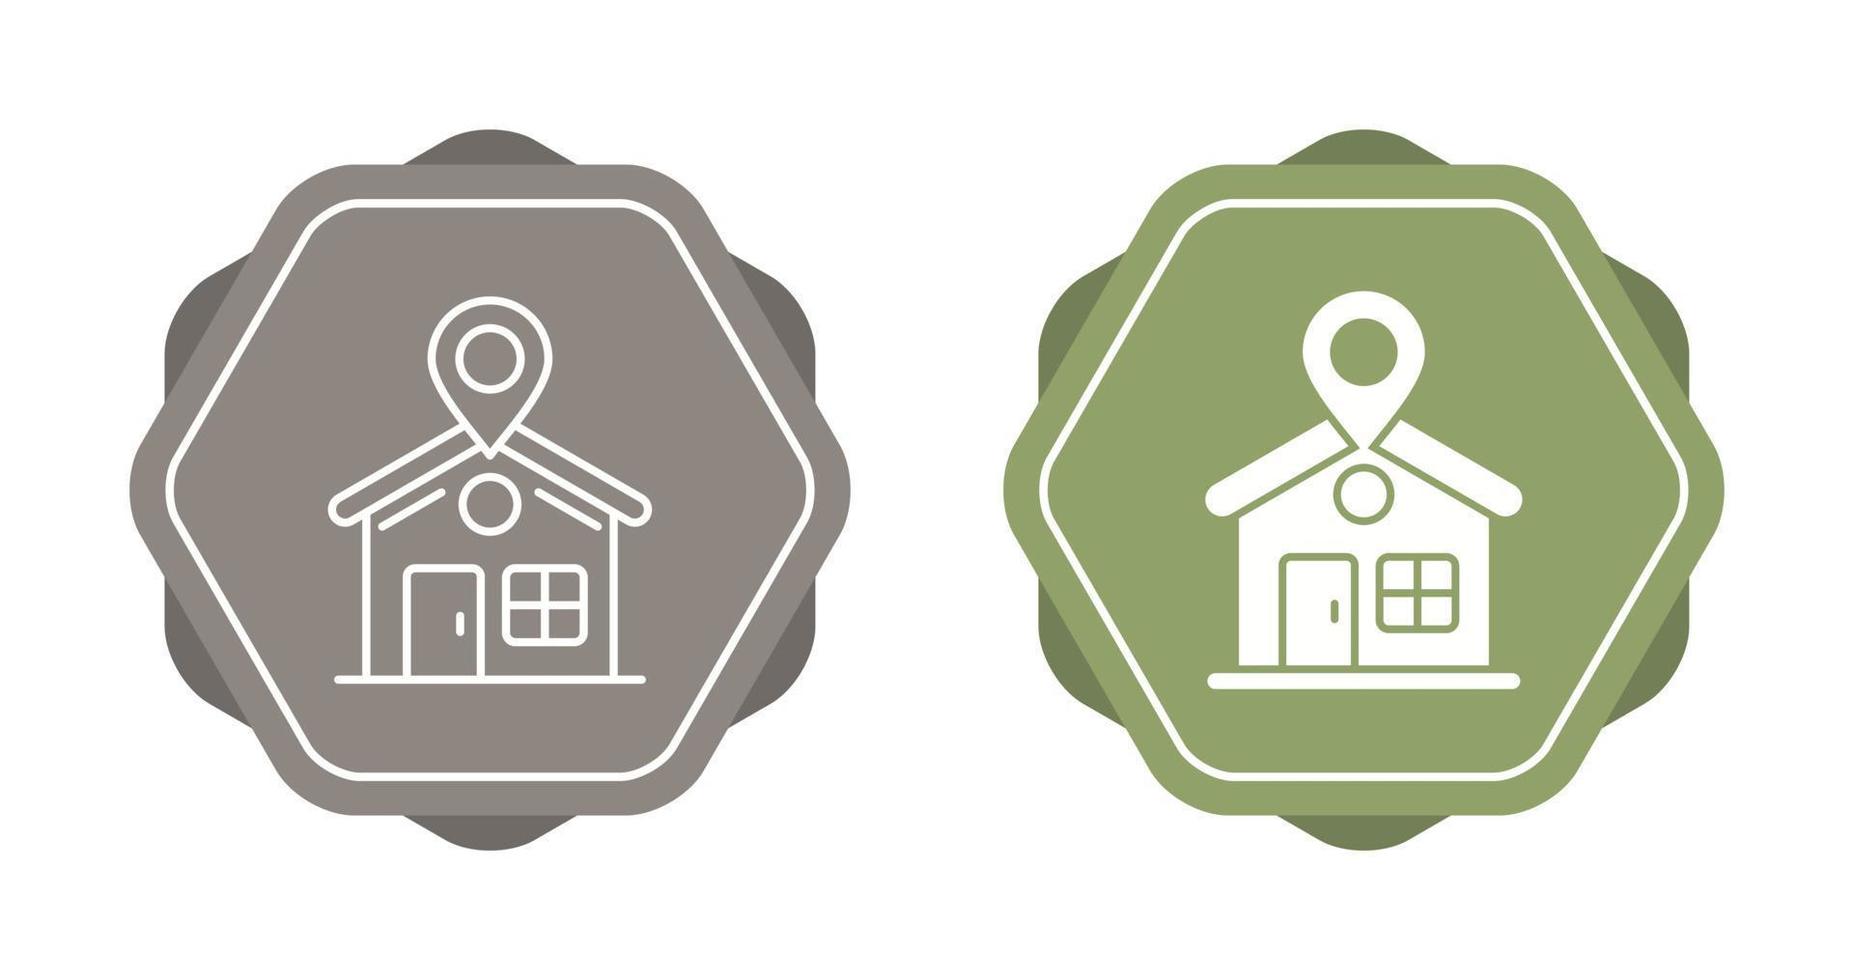 ícone de vetor de localização de casa